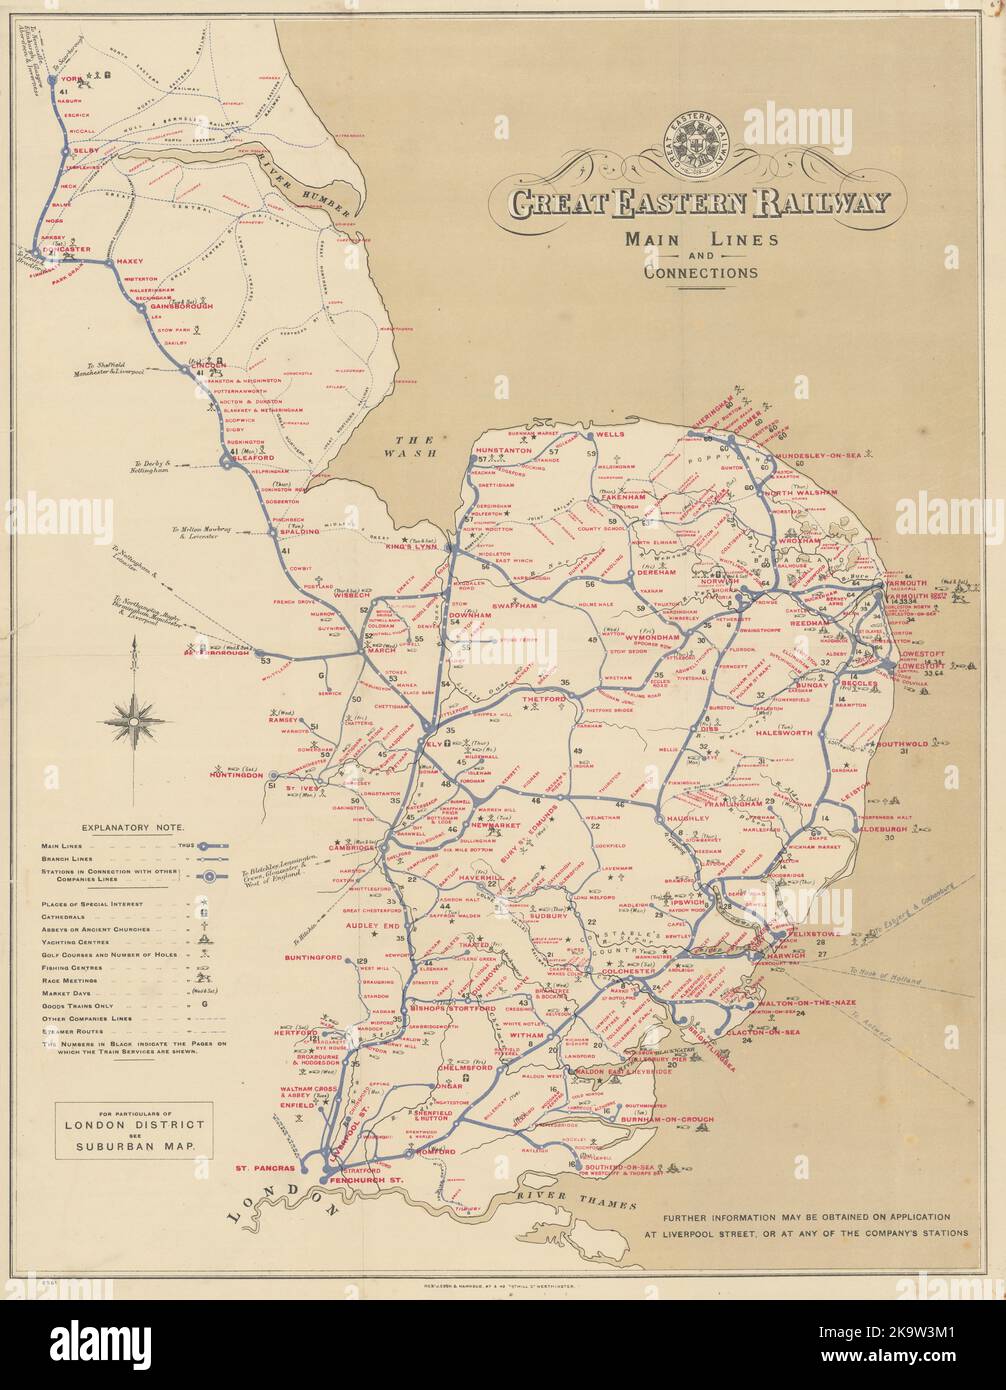 Great Eastern Railway - lignes principales et connexions c1918 carte ancienne Banque D'Images